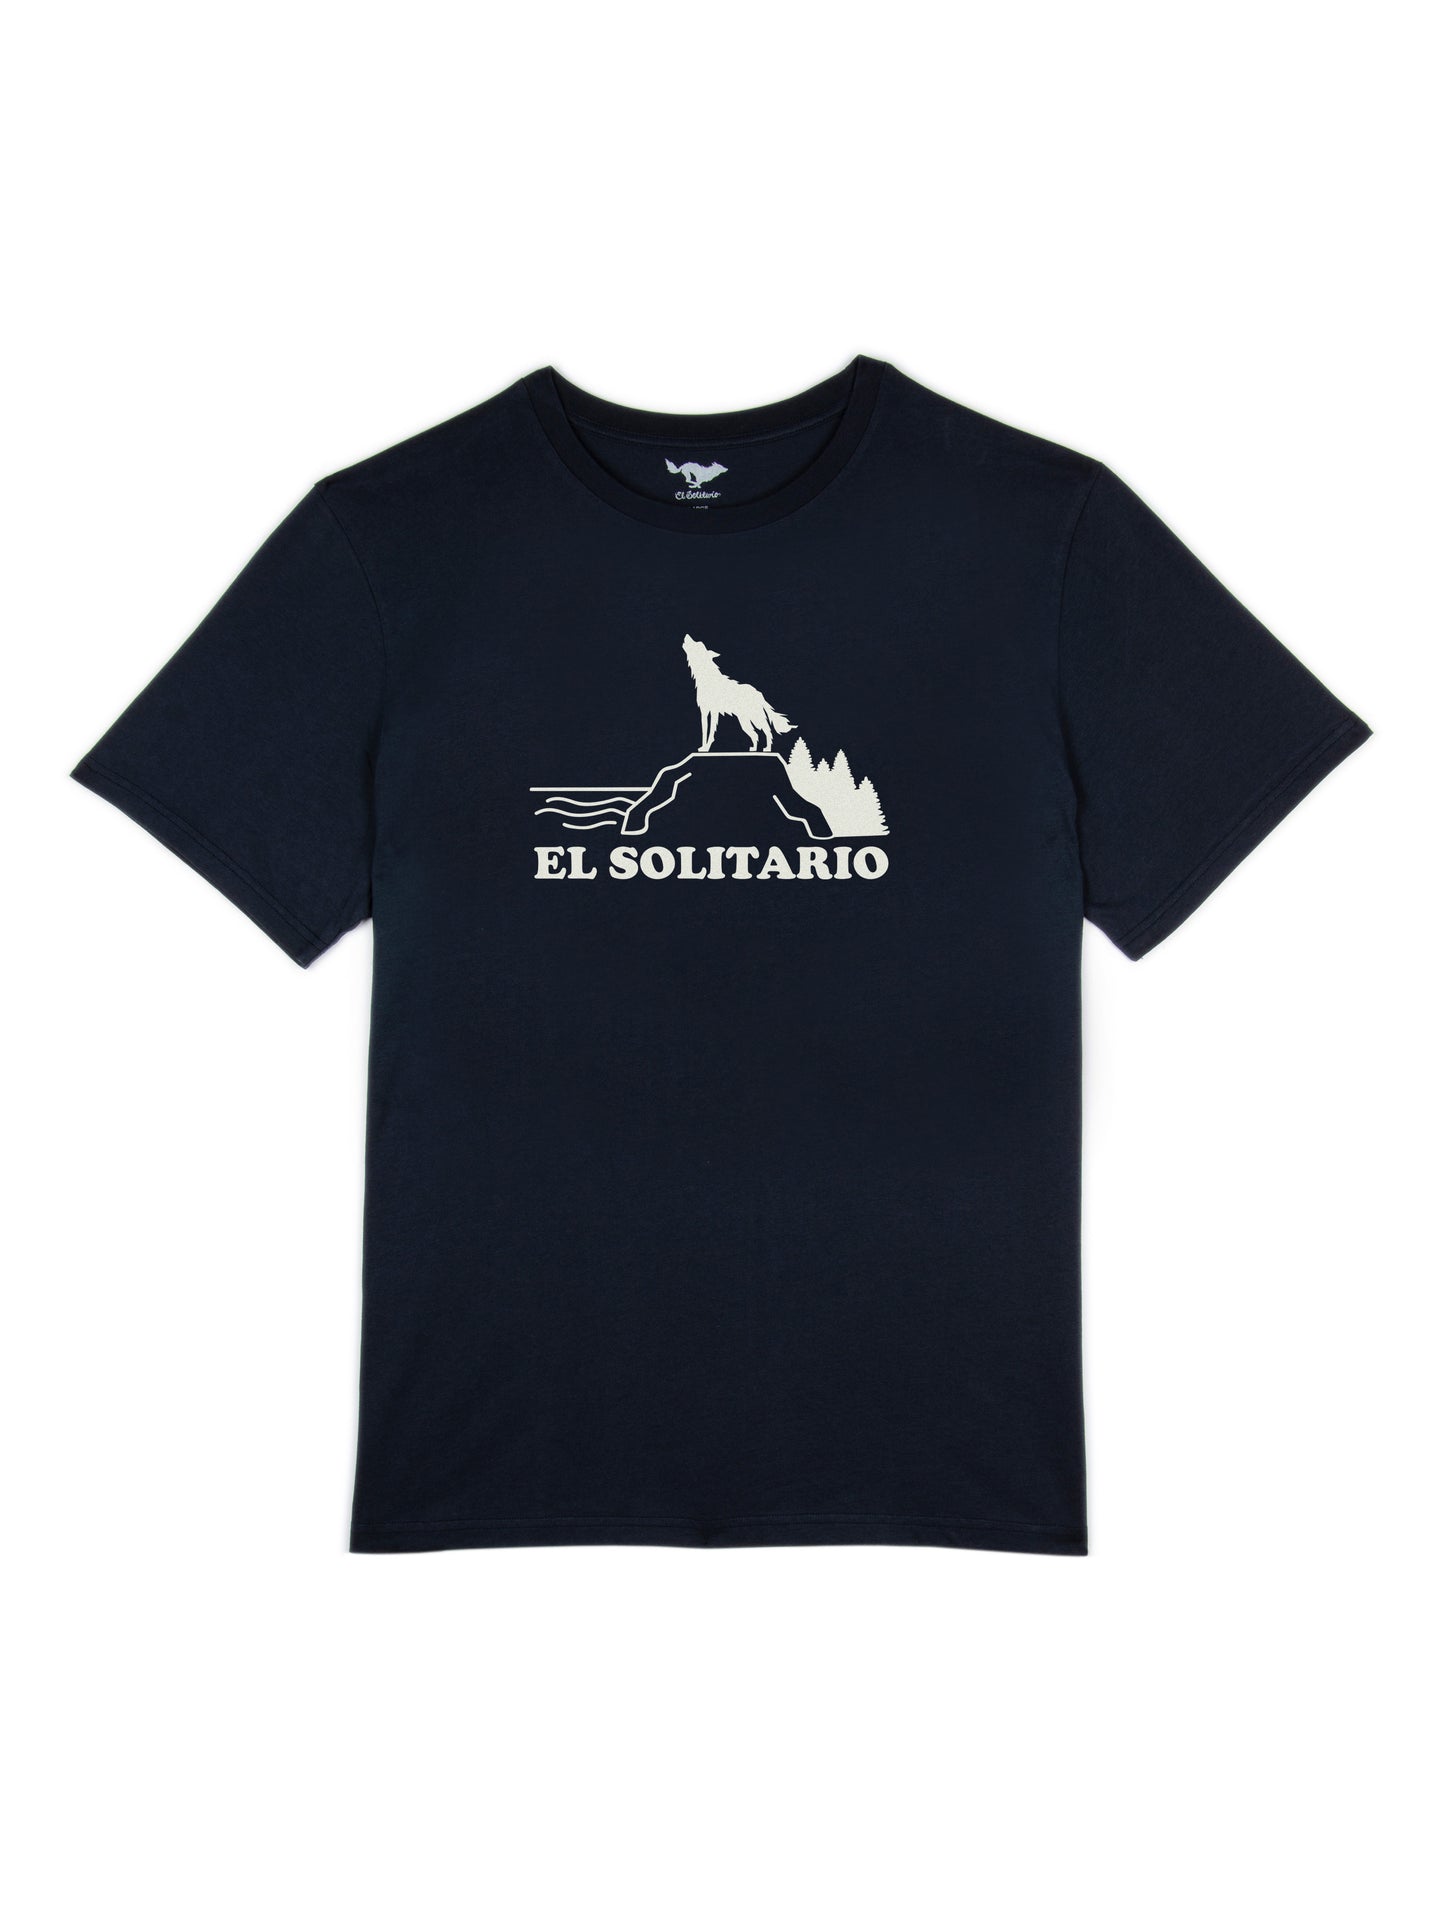 Howling Wolf T-Shirt